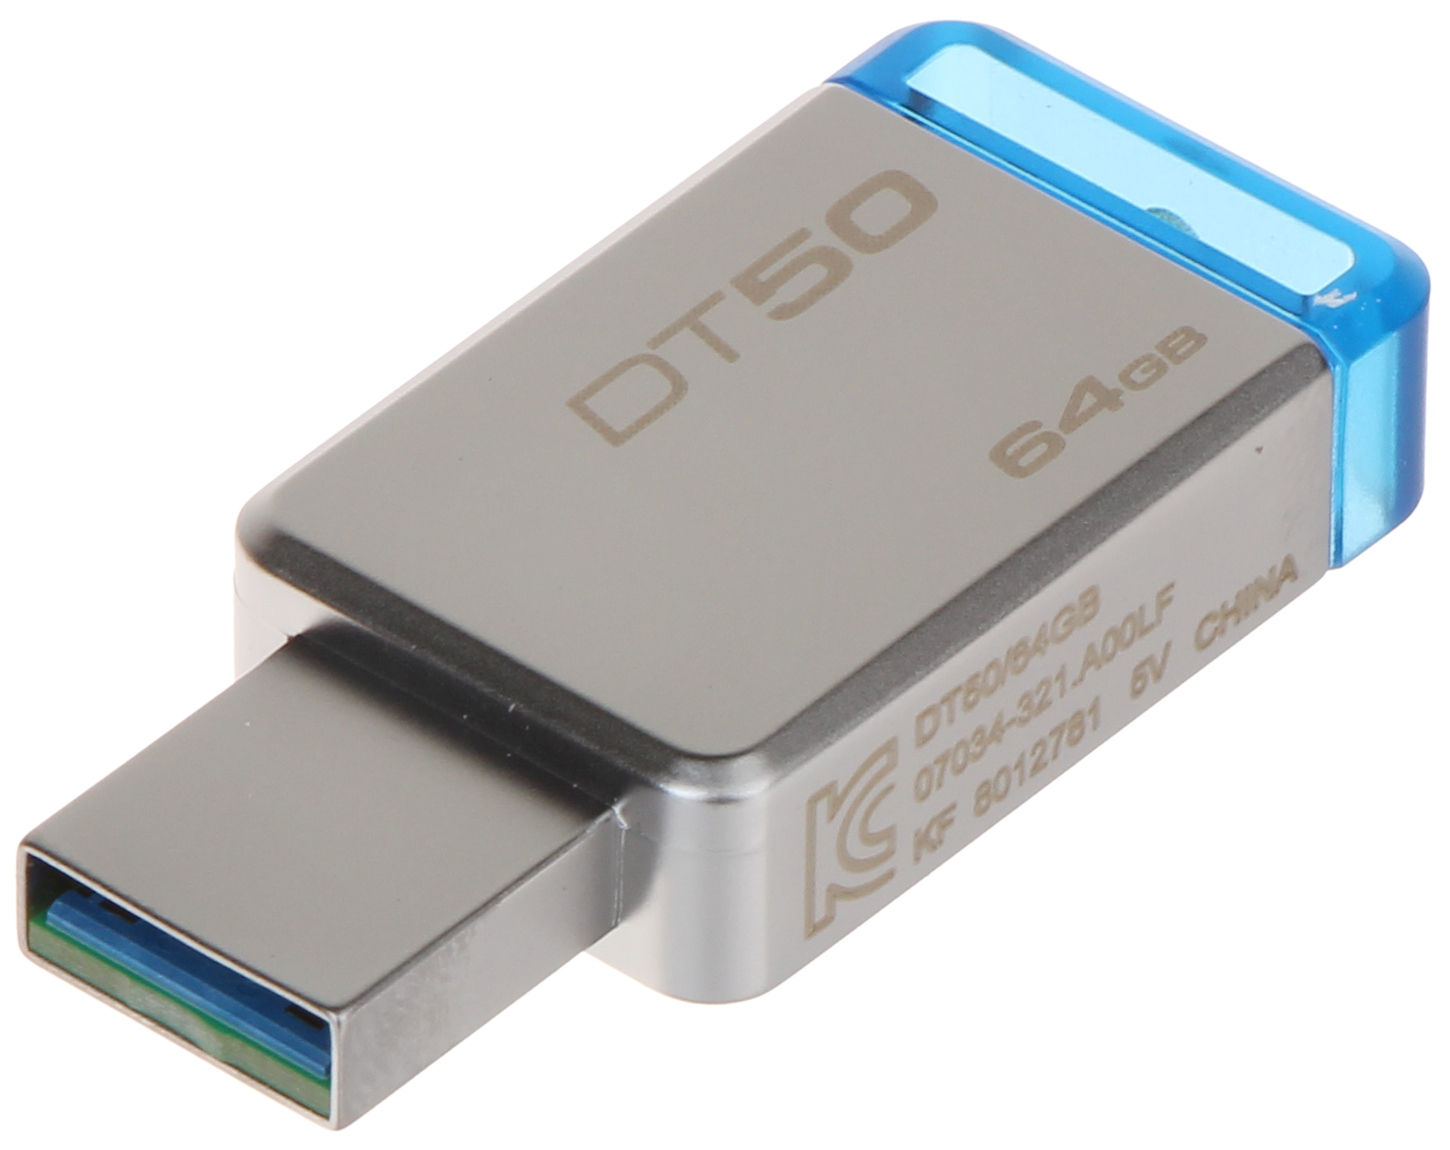 FLASH DRIVE FD-64/DT50-KING 64 USB 3.1/3.0 - Flash Drives - Delta